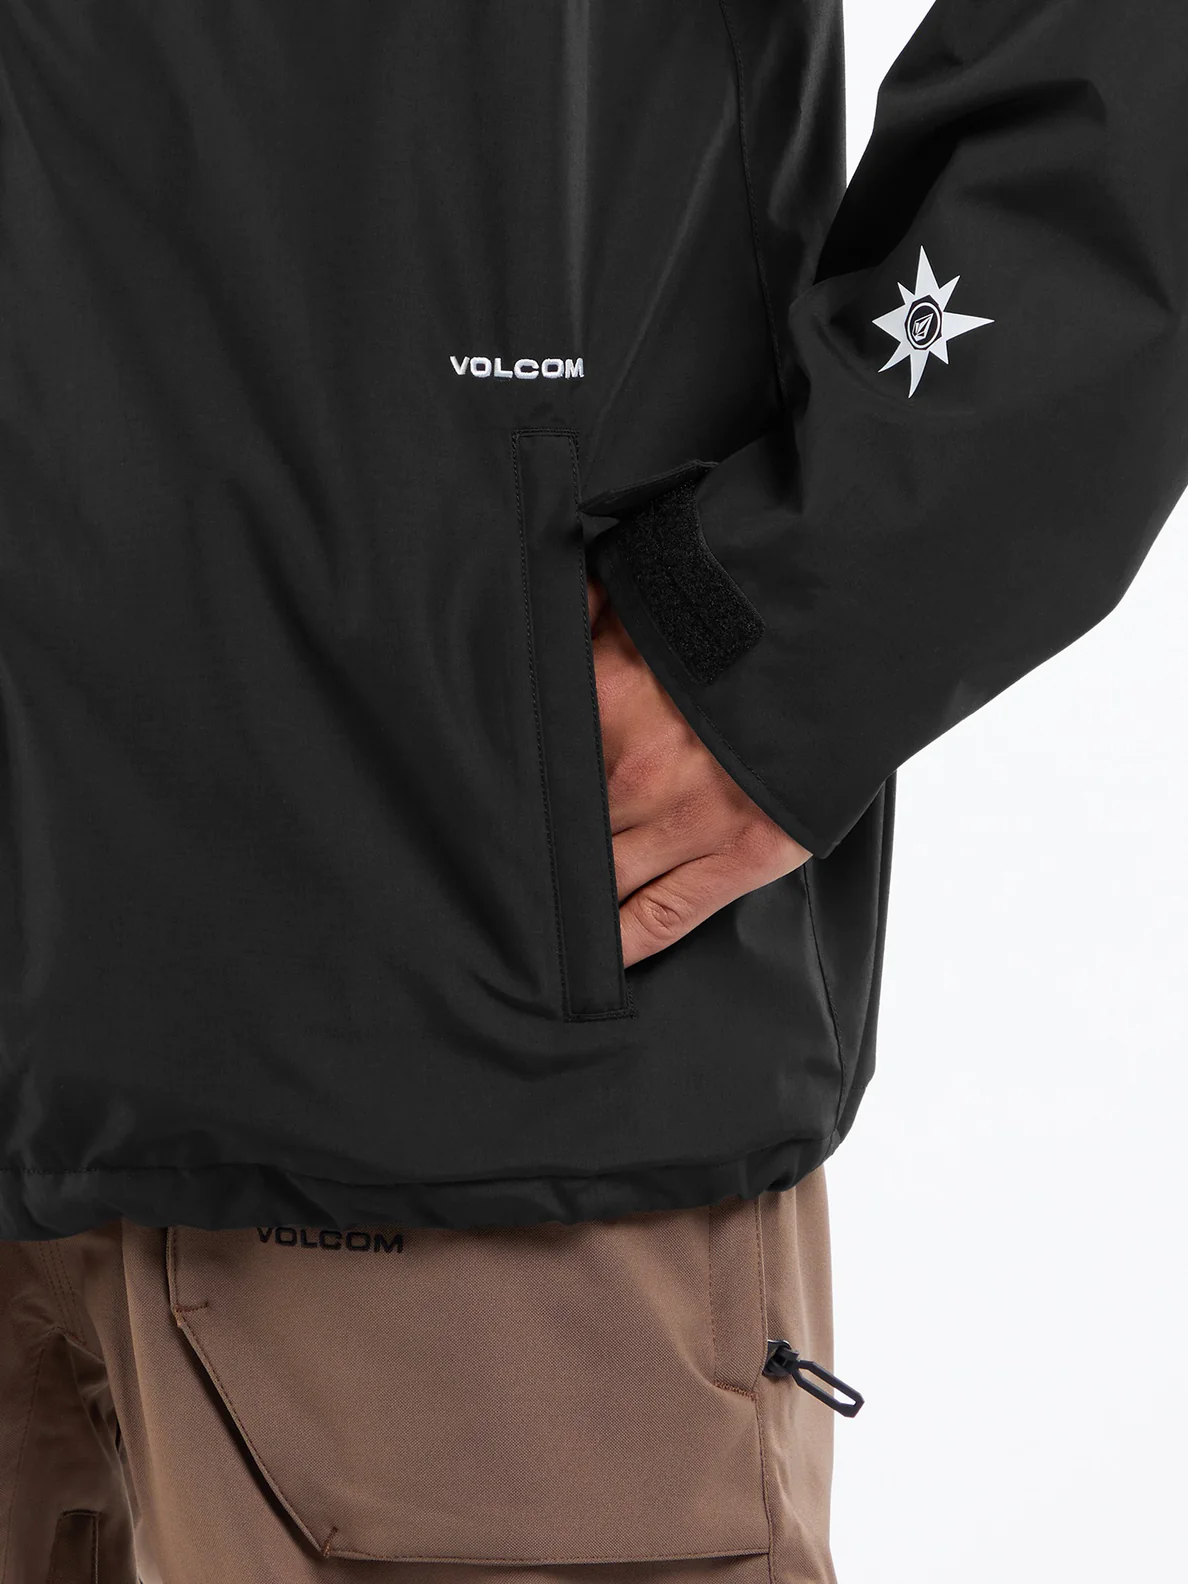 Volcom 2836 Insulated Snowboard Jacke schwarz